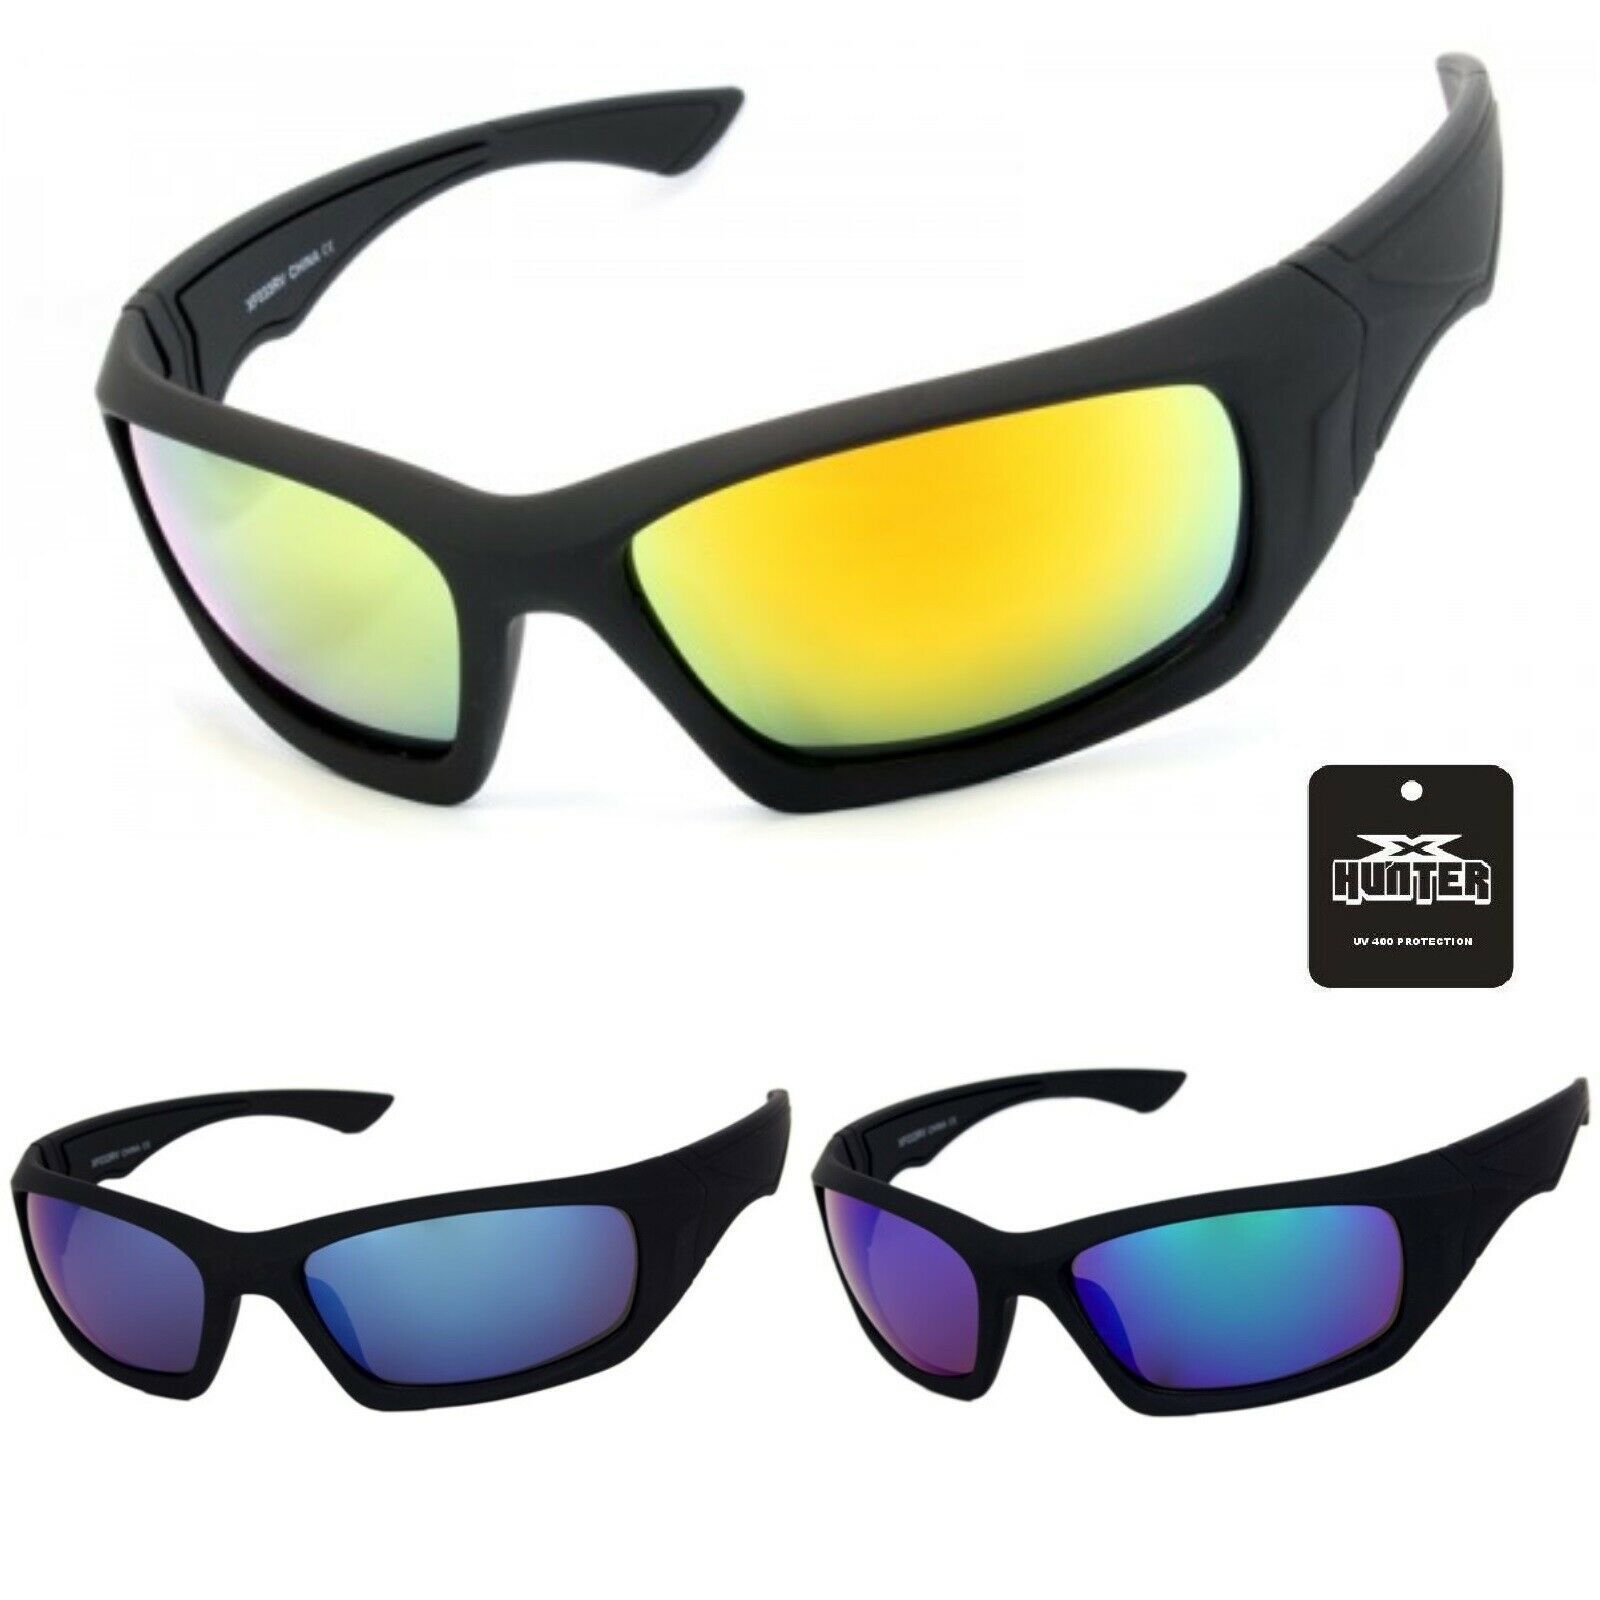 Unbranded - Nuevo lo último para hombres conducción deportiva anteojos de sol gafas